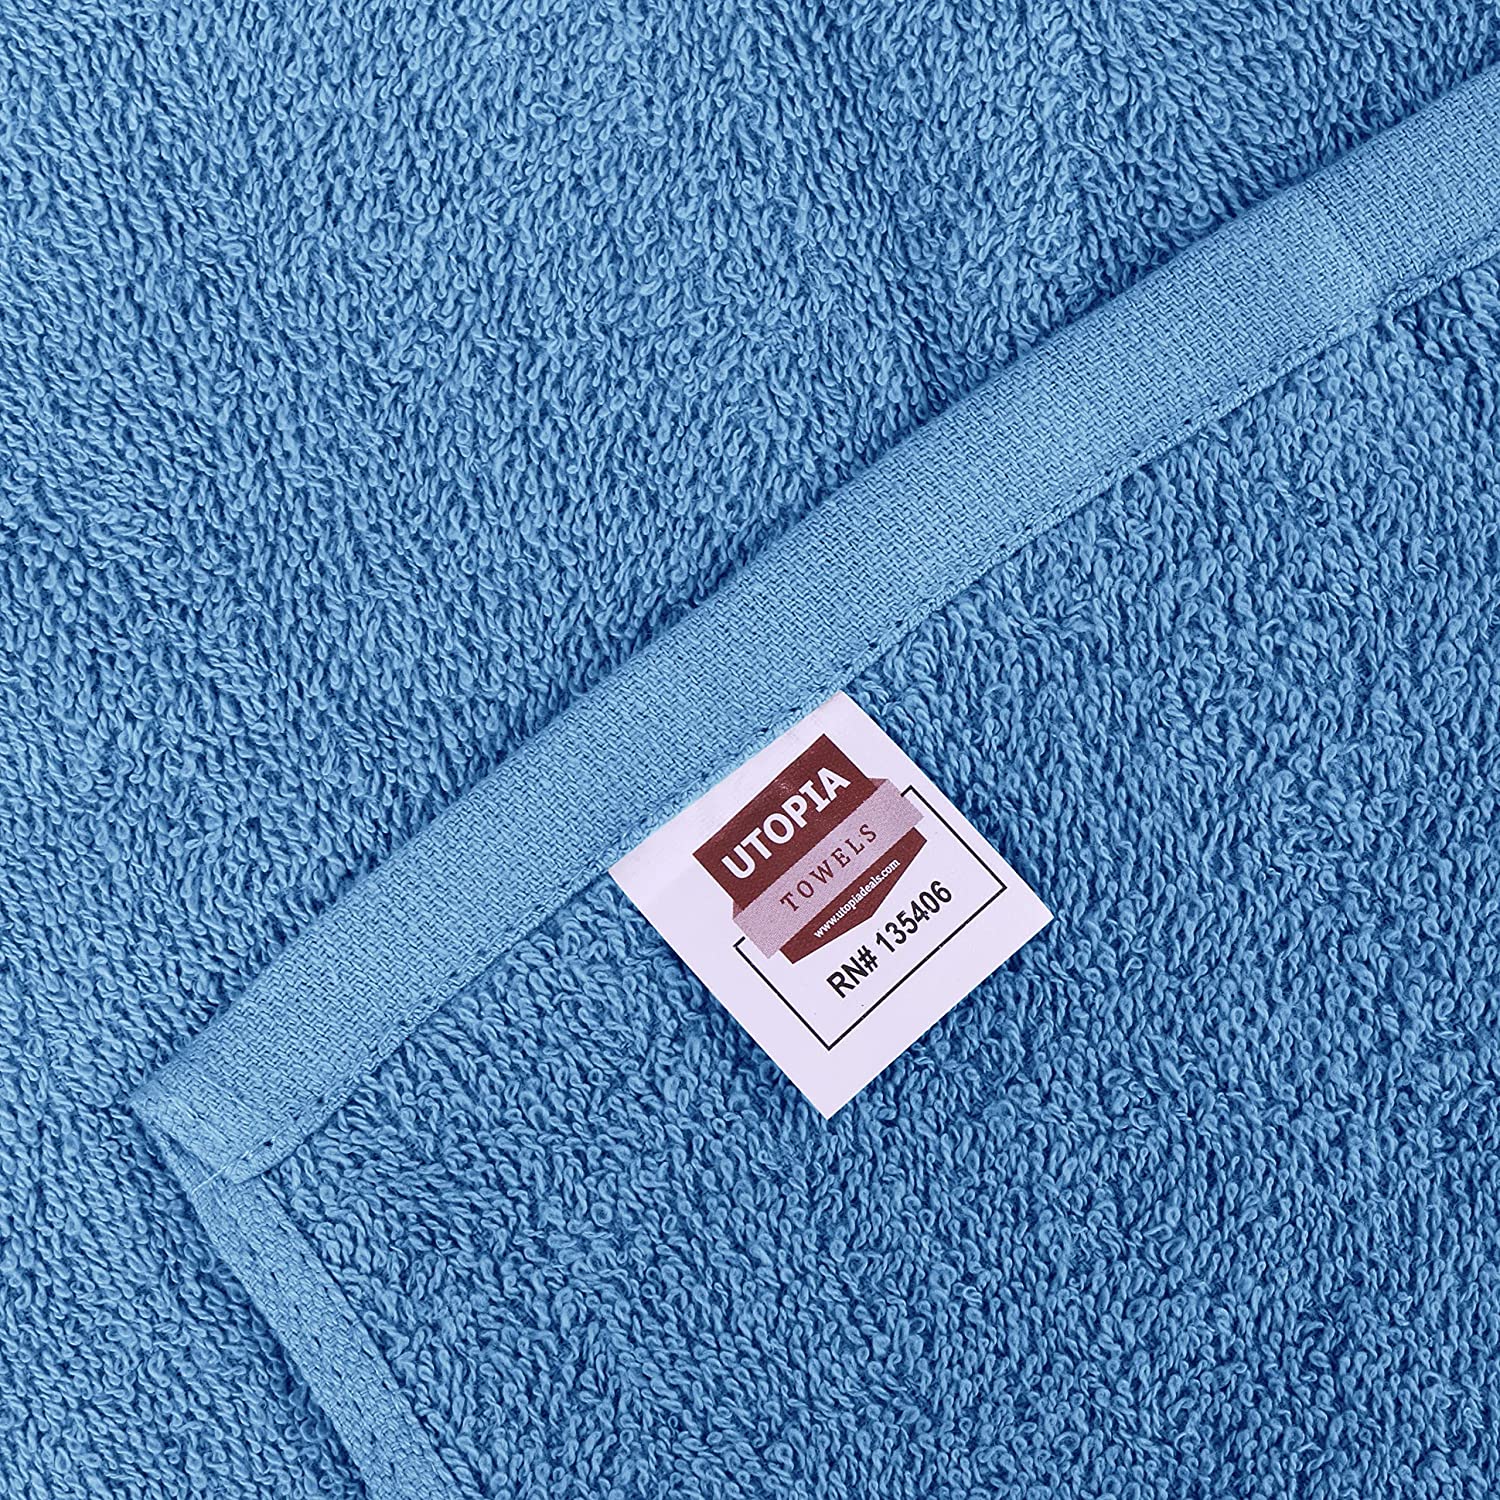 Utopia Towels – Petites Serviettes, débarbouillettes – 30 x 30 cm (60 Paquets, Bleu électrique) – 1